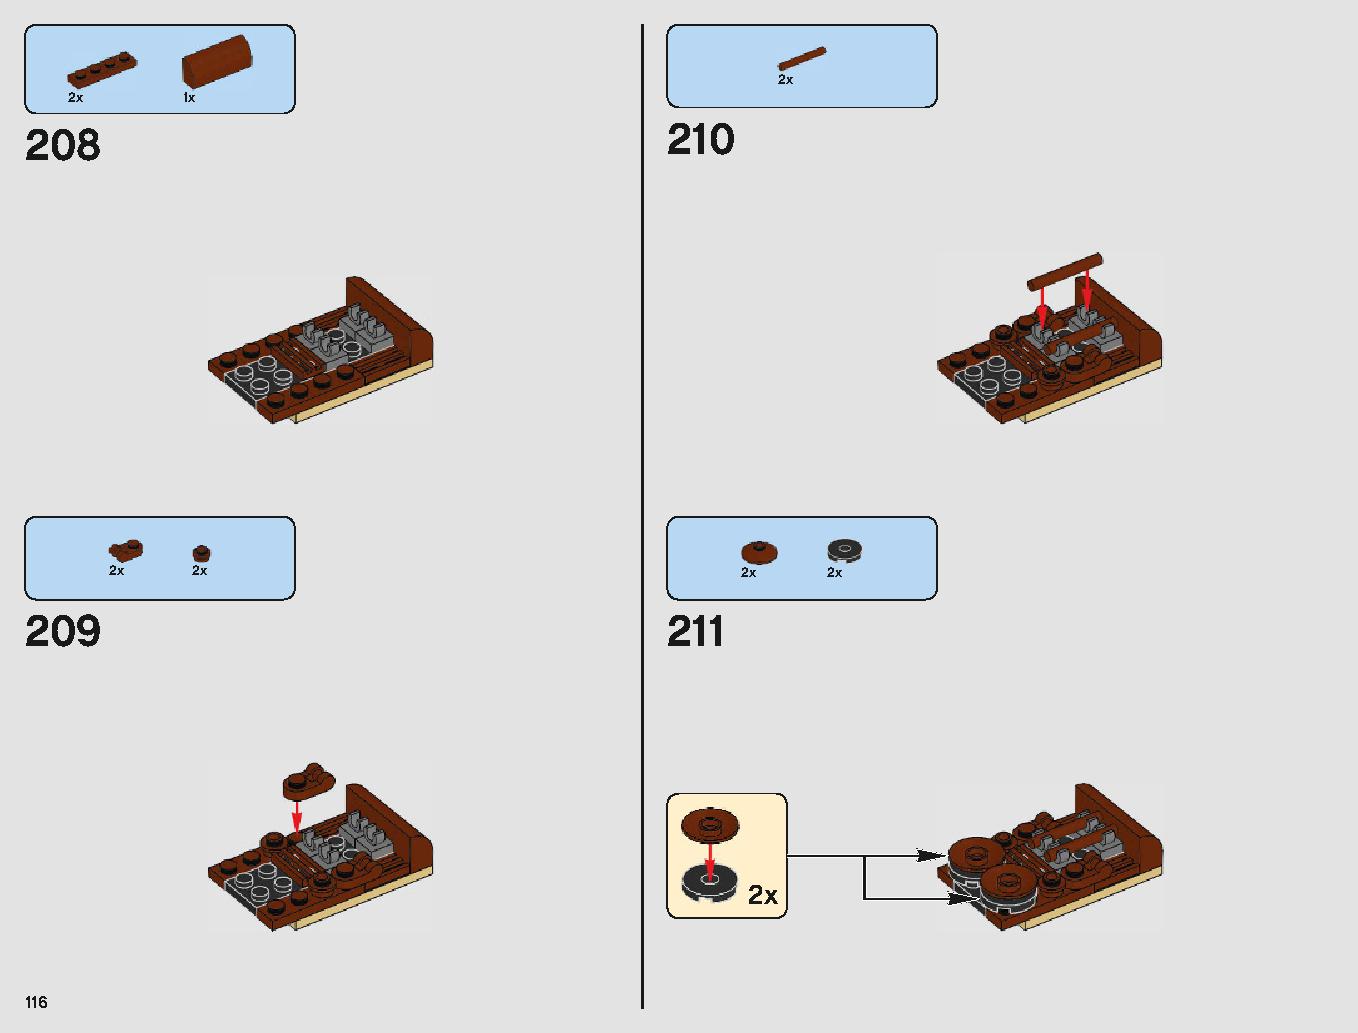 サンドクローラー 75220 レゴの商品情報 レゴの説明書・組立方法 116 page